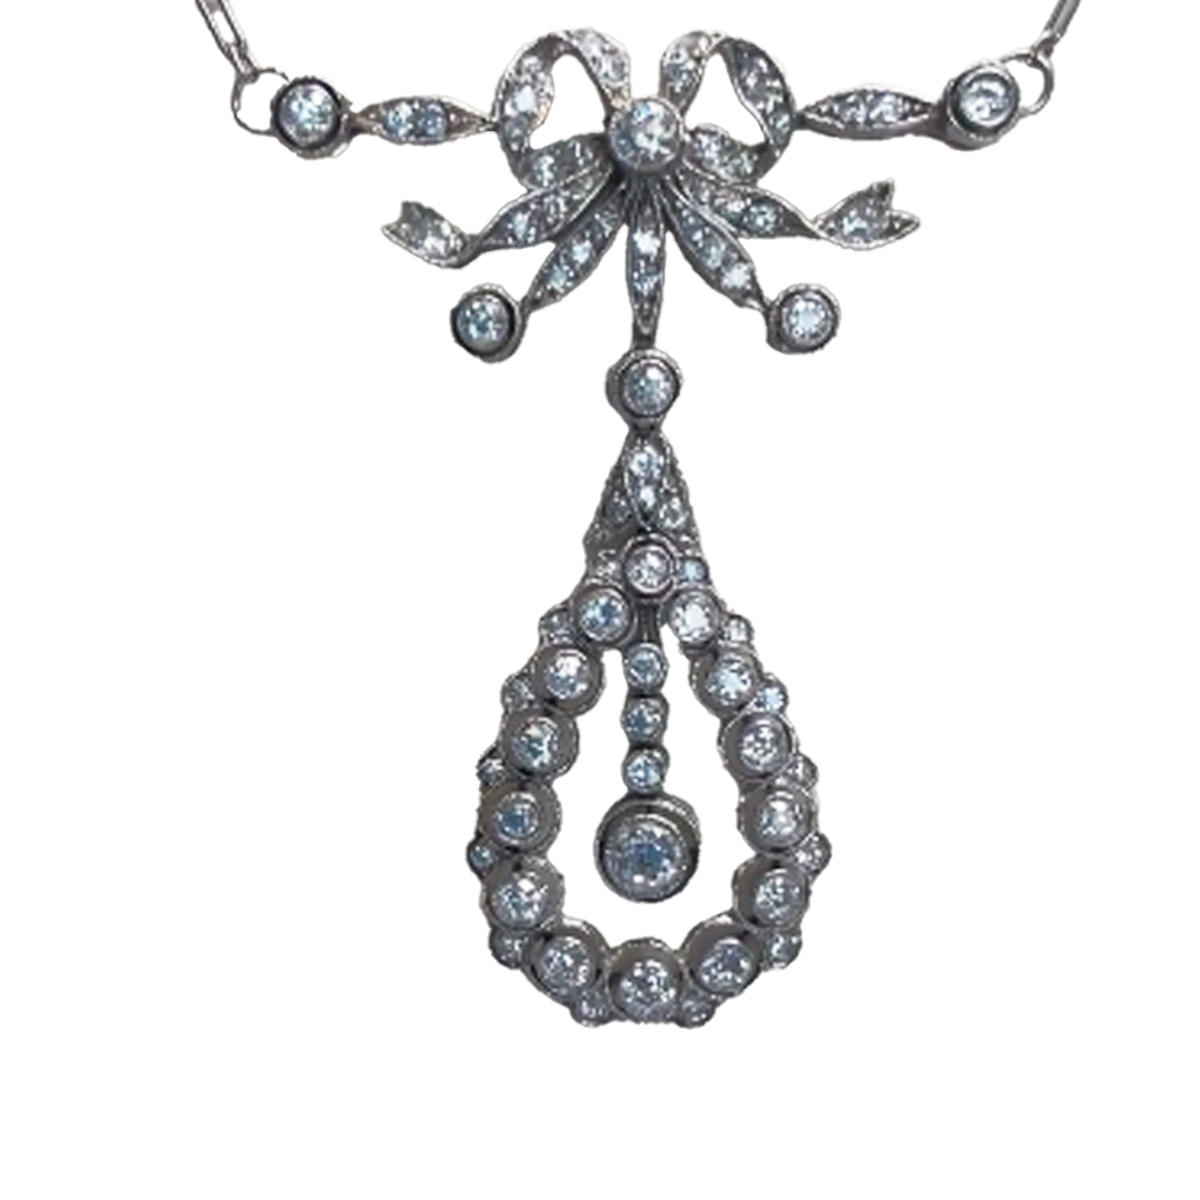 Edwardian Platinum Diamond Filigree Pendant Necklace front view close-up details